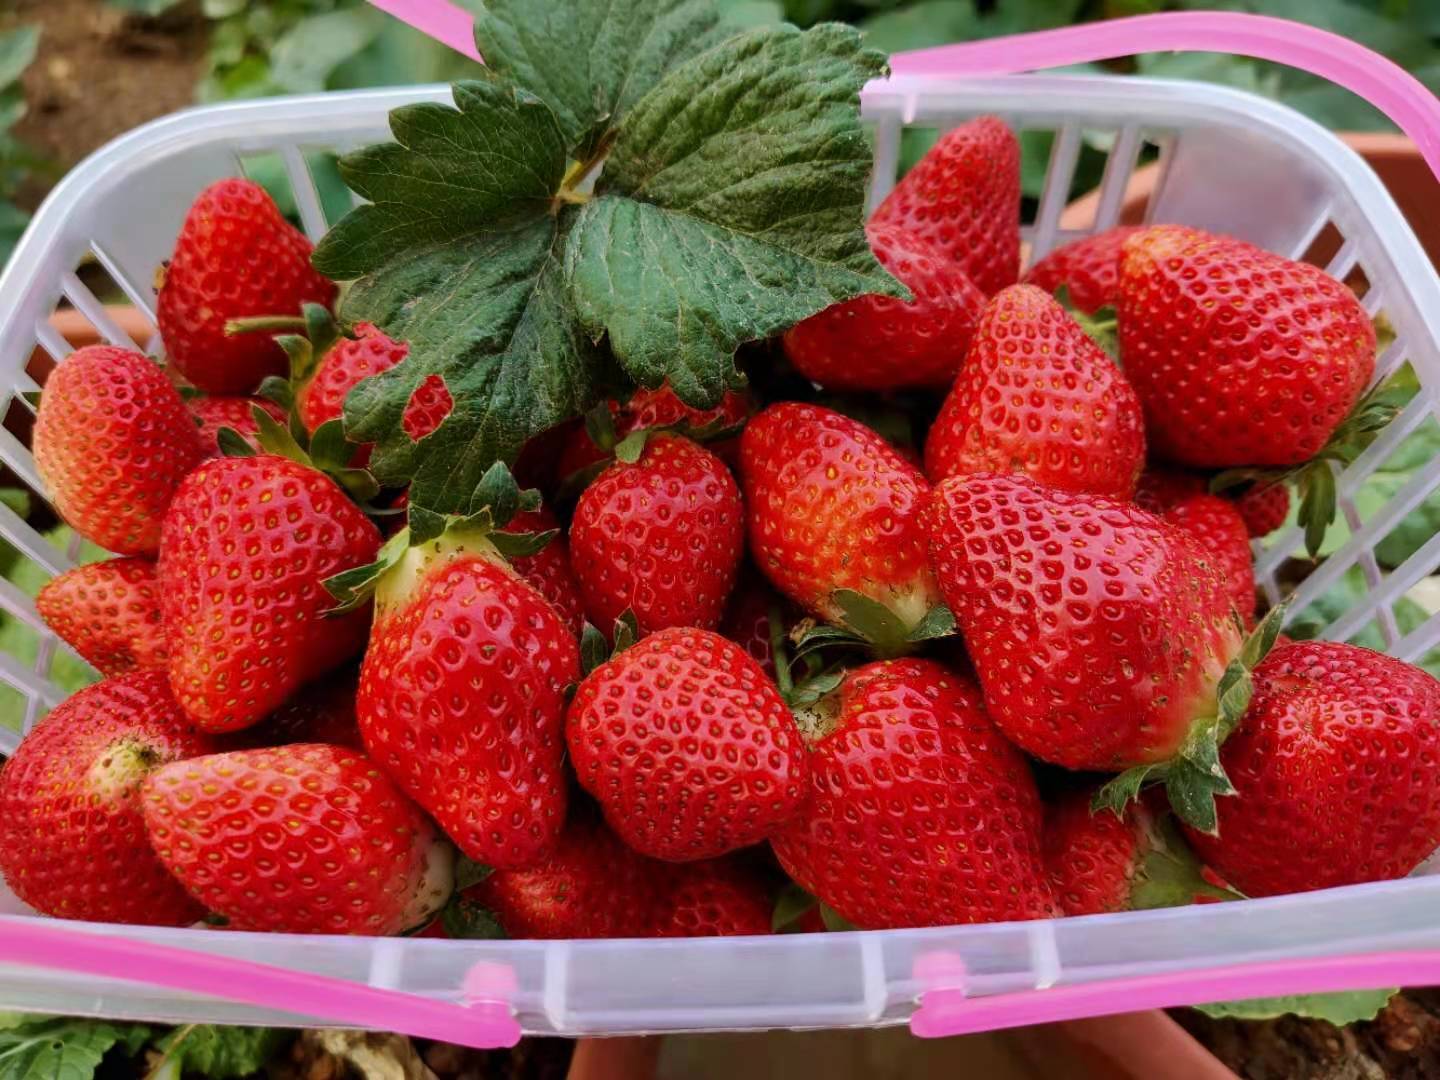 【宝安·亲子采摘】草莓季来了~ 29.9元抢1大1小法兰地草莓采摘亲子门票！